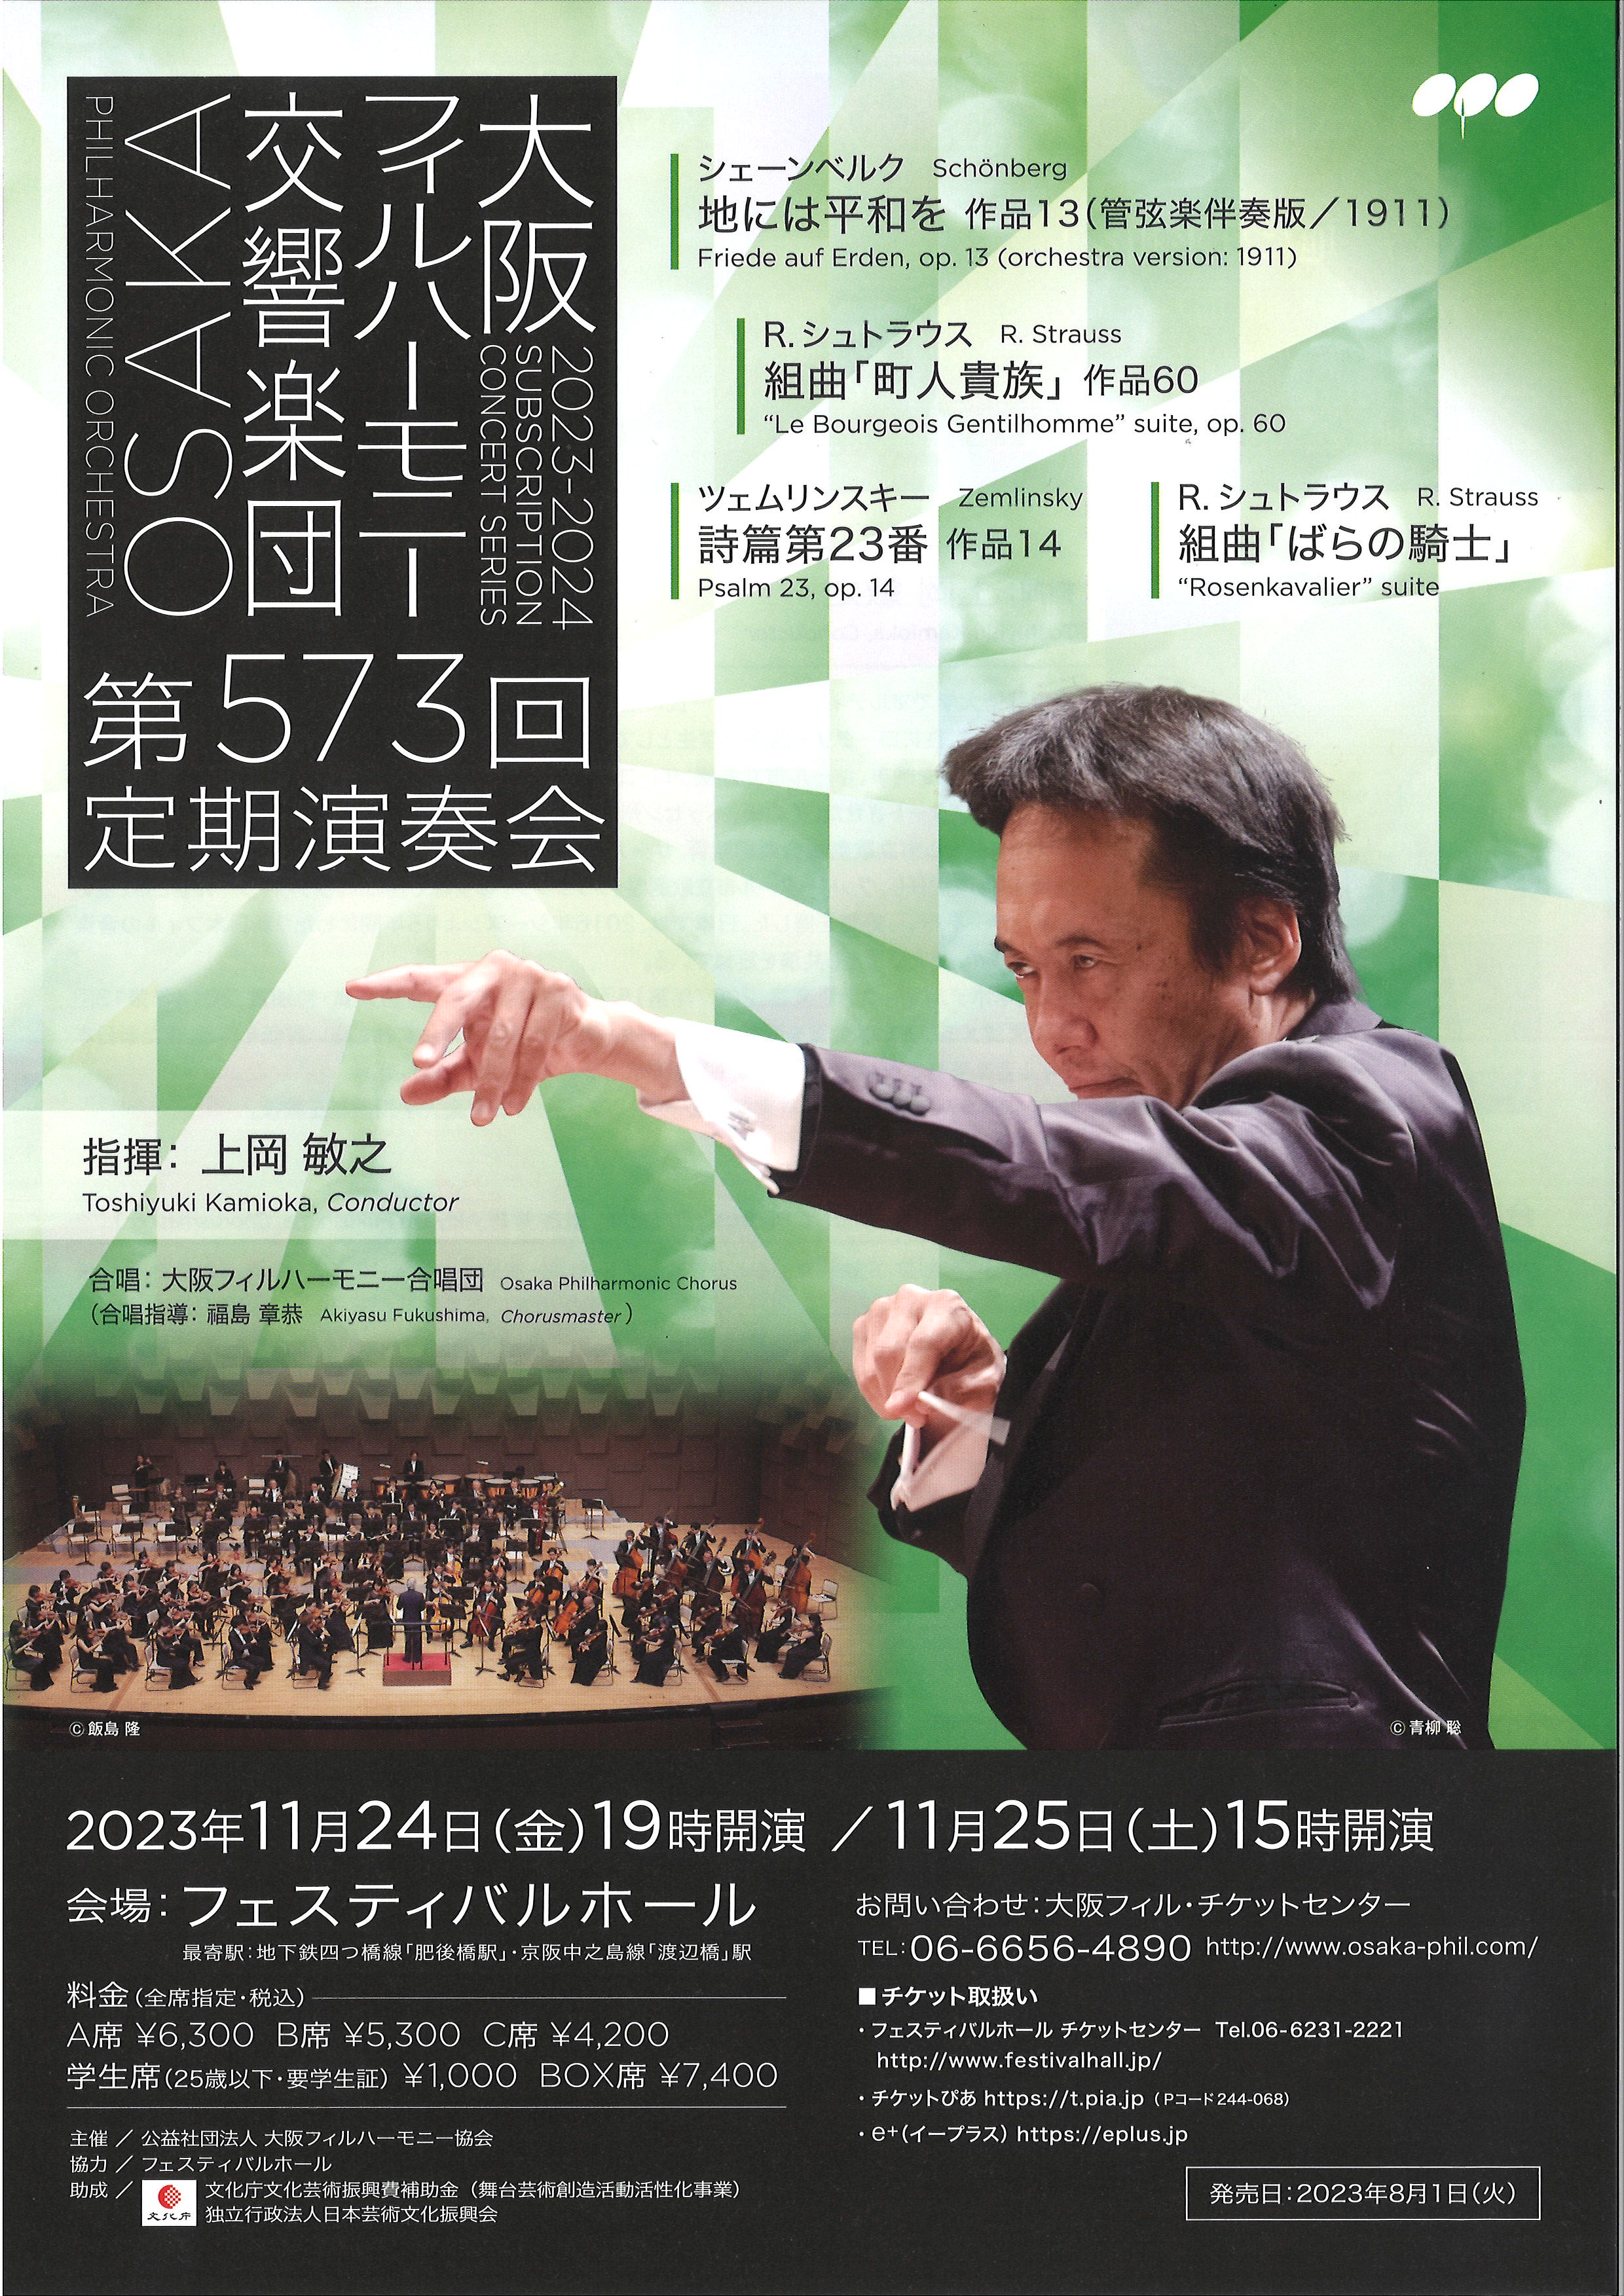 大阪フィルハーモニー交響楽団第573回定期演奏会のフライヤー画像